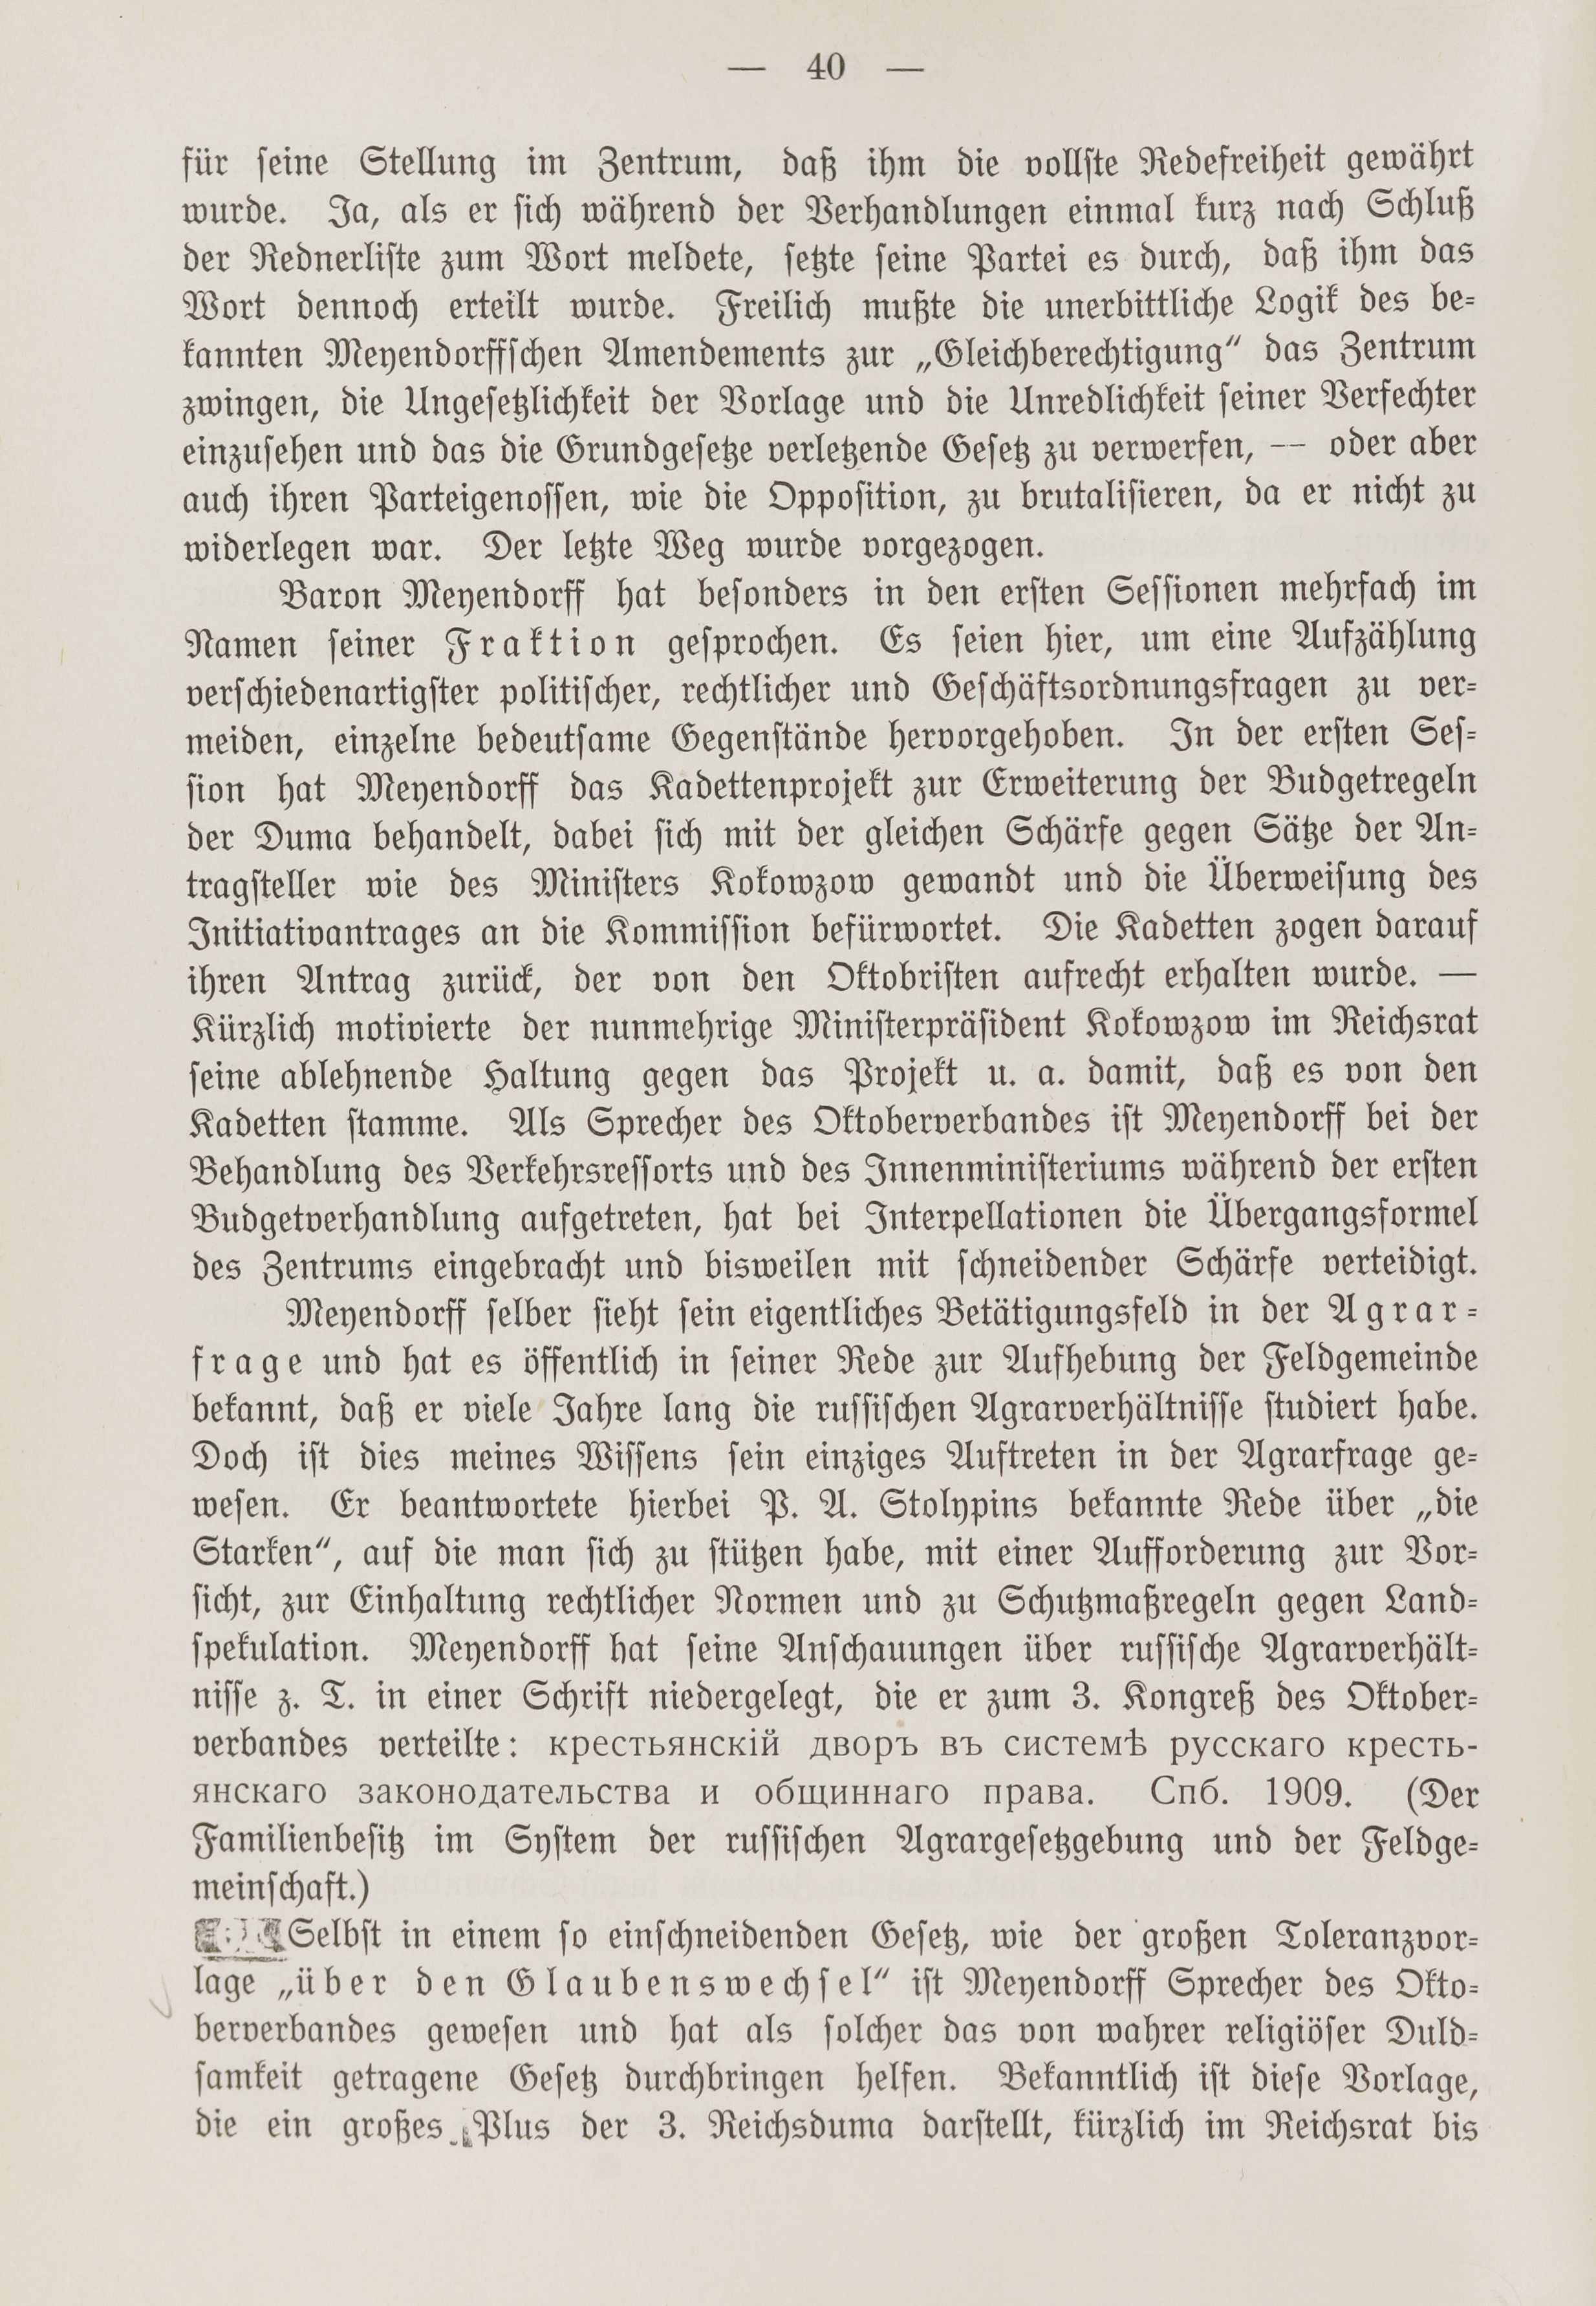 Deutsche Monatsschrift für Russland [1] (1912) | 47. (40) Haupttext